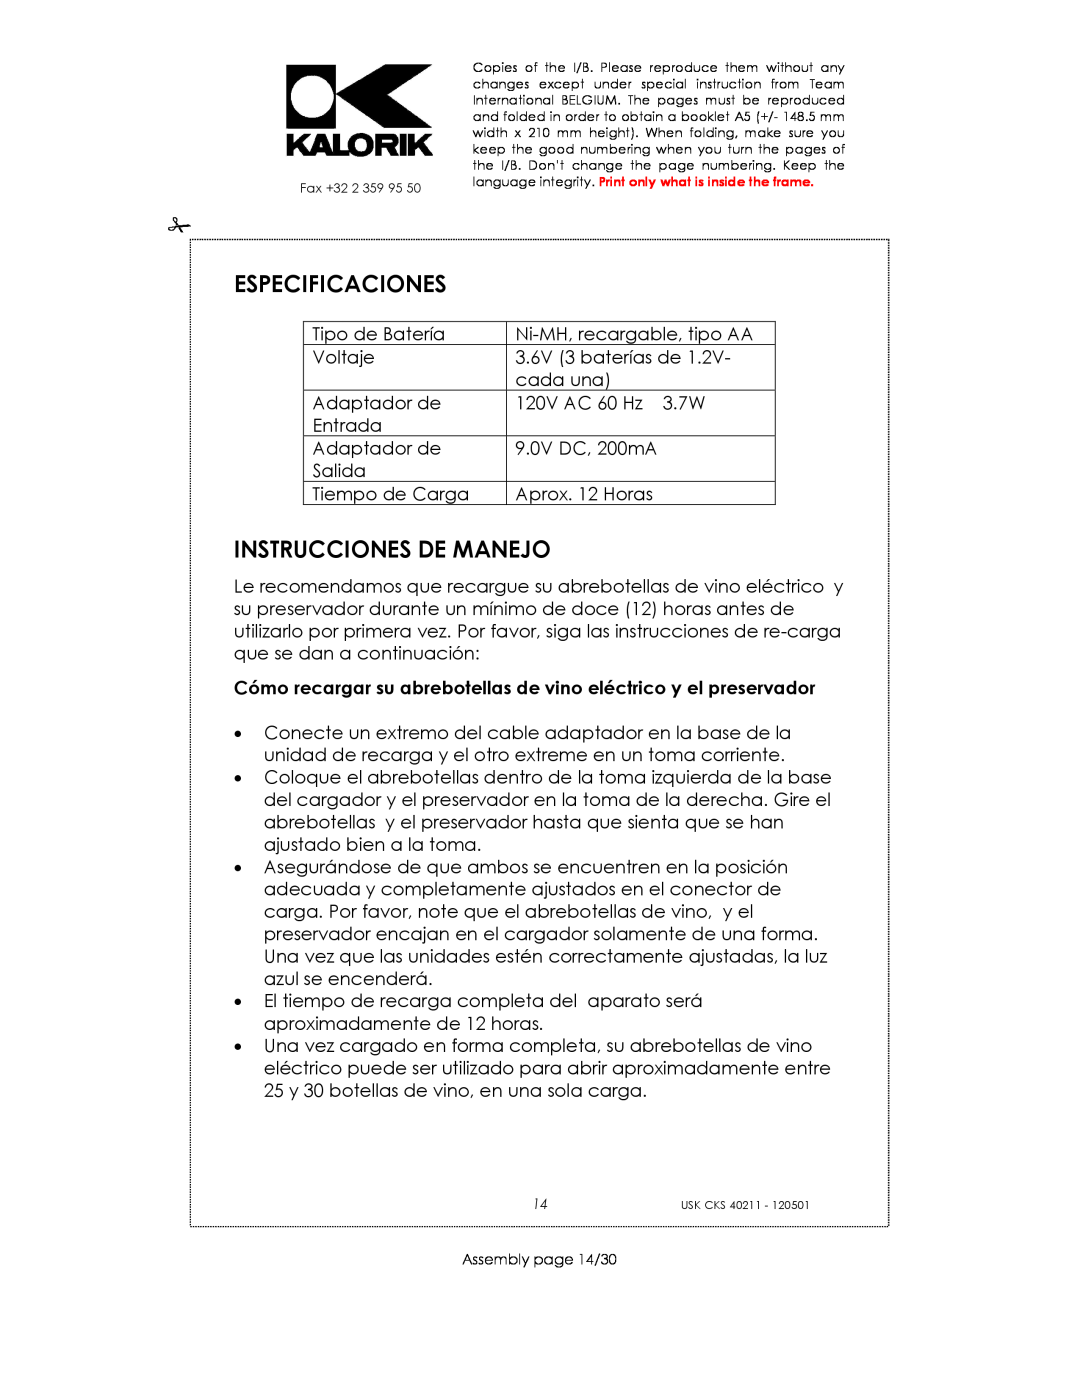 Kalorik CKS 40211 manual Especificaciones, Instrucciones De Manejo 